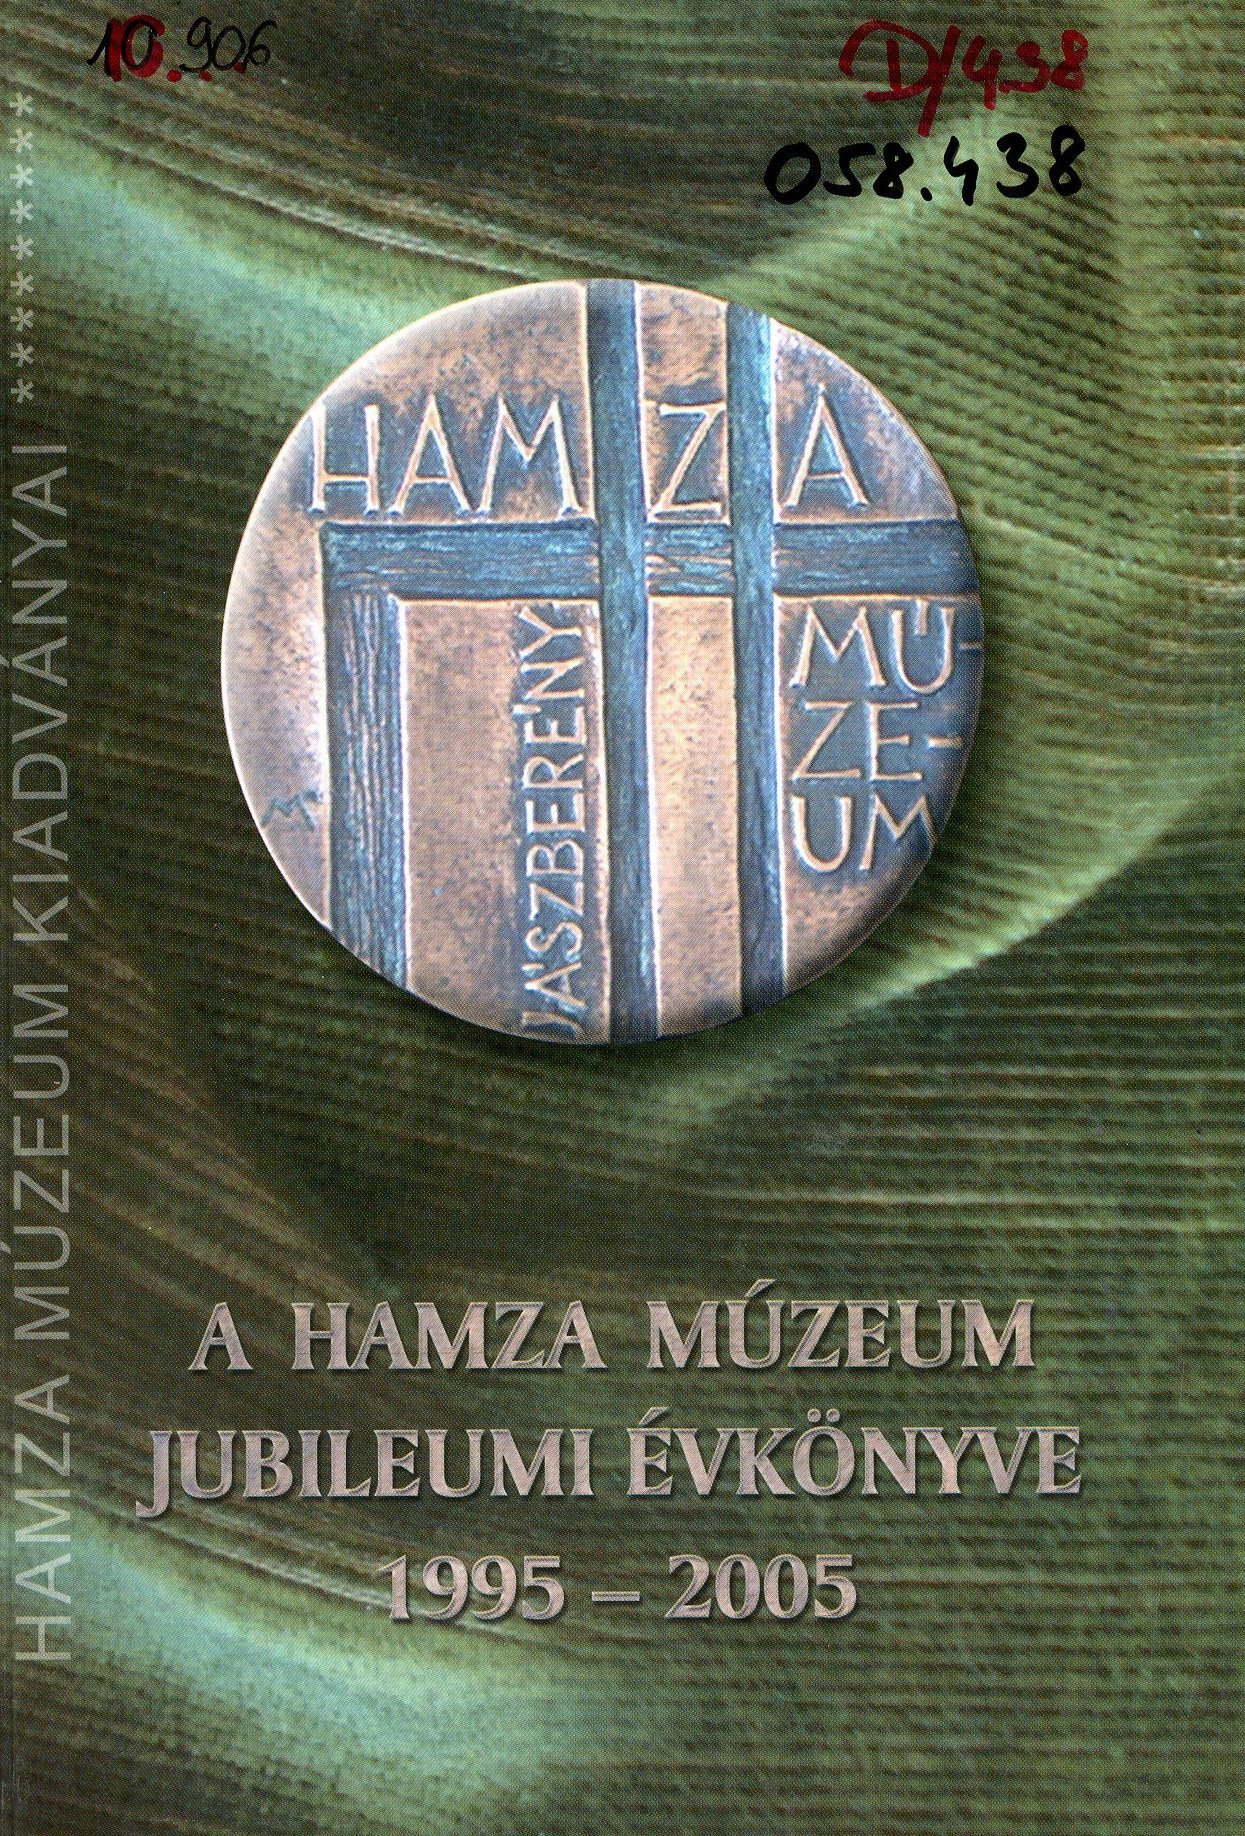 A Hamza Múzeum Jubileumi Évkönyve 1995 - 2005 (Erkel Ferenc Múzeum és Könyvtár, Gyula CC BY-NC-SA)